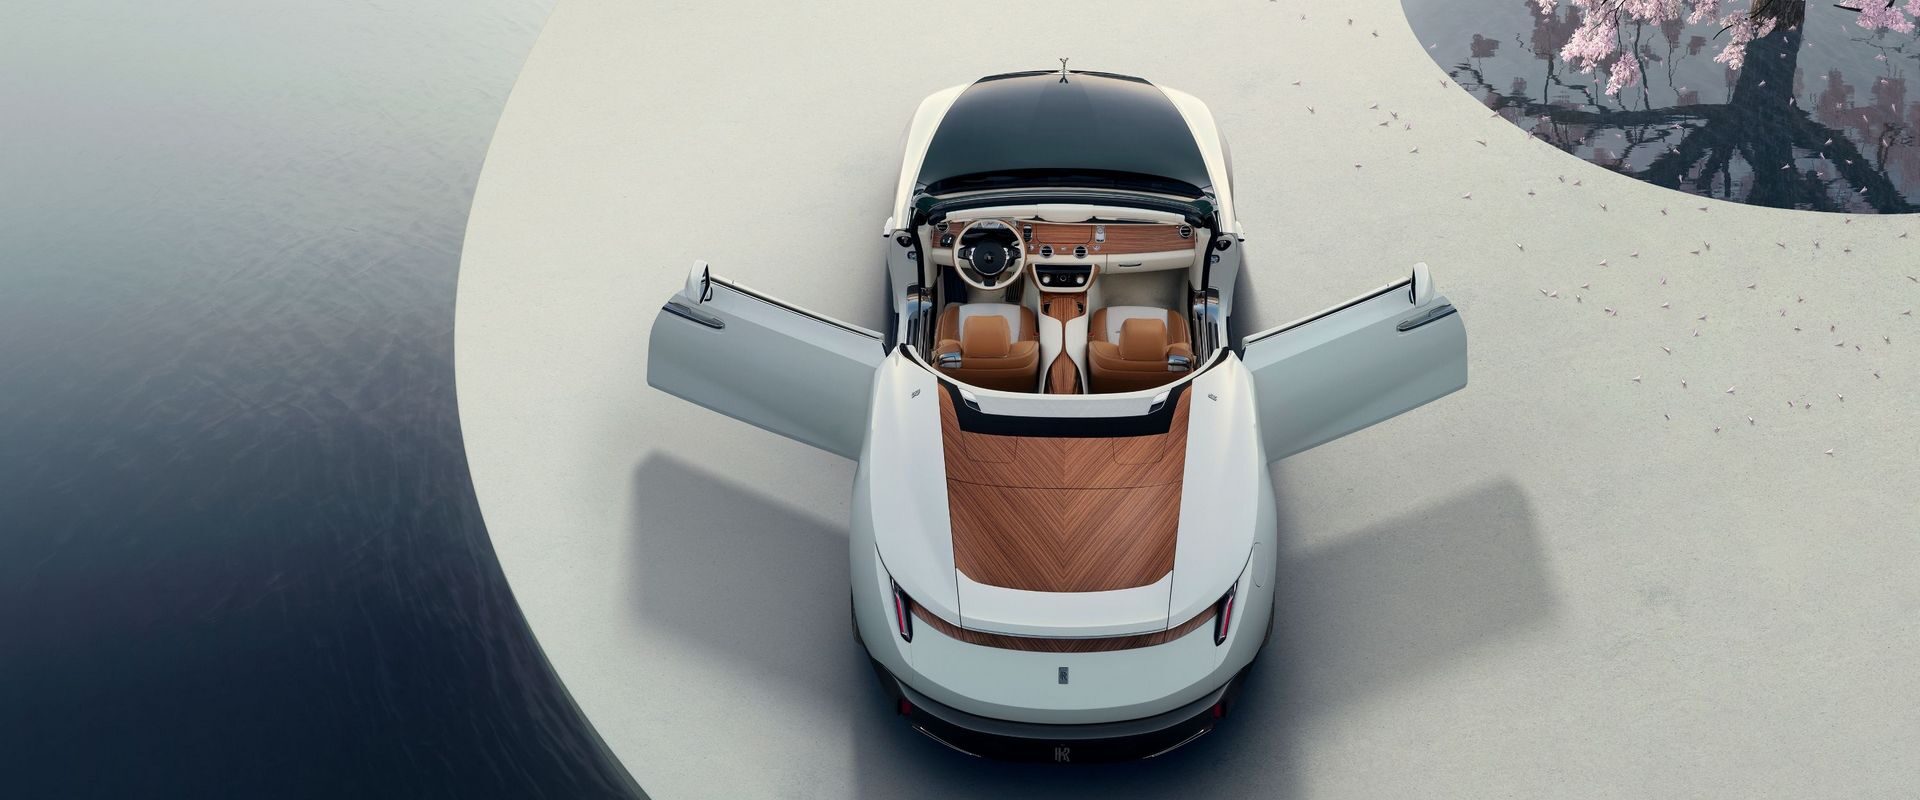 Rolls-Royce Arcadia Droptail — удивительная машина и все такое, но какие у нее часы